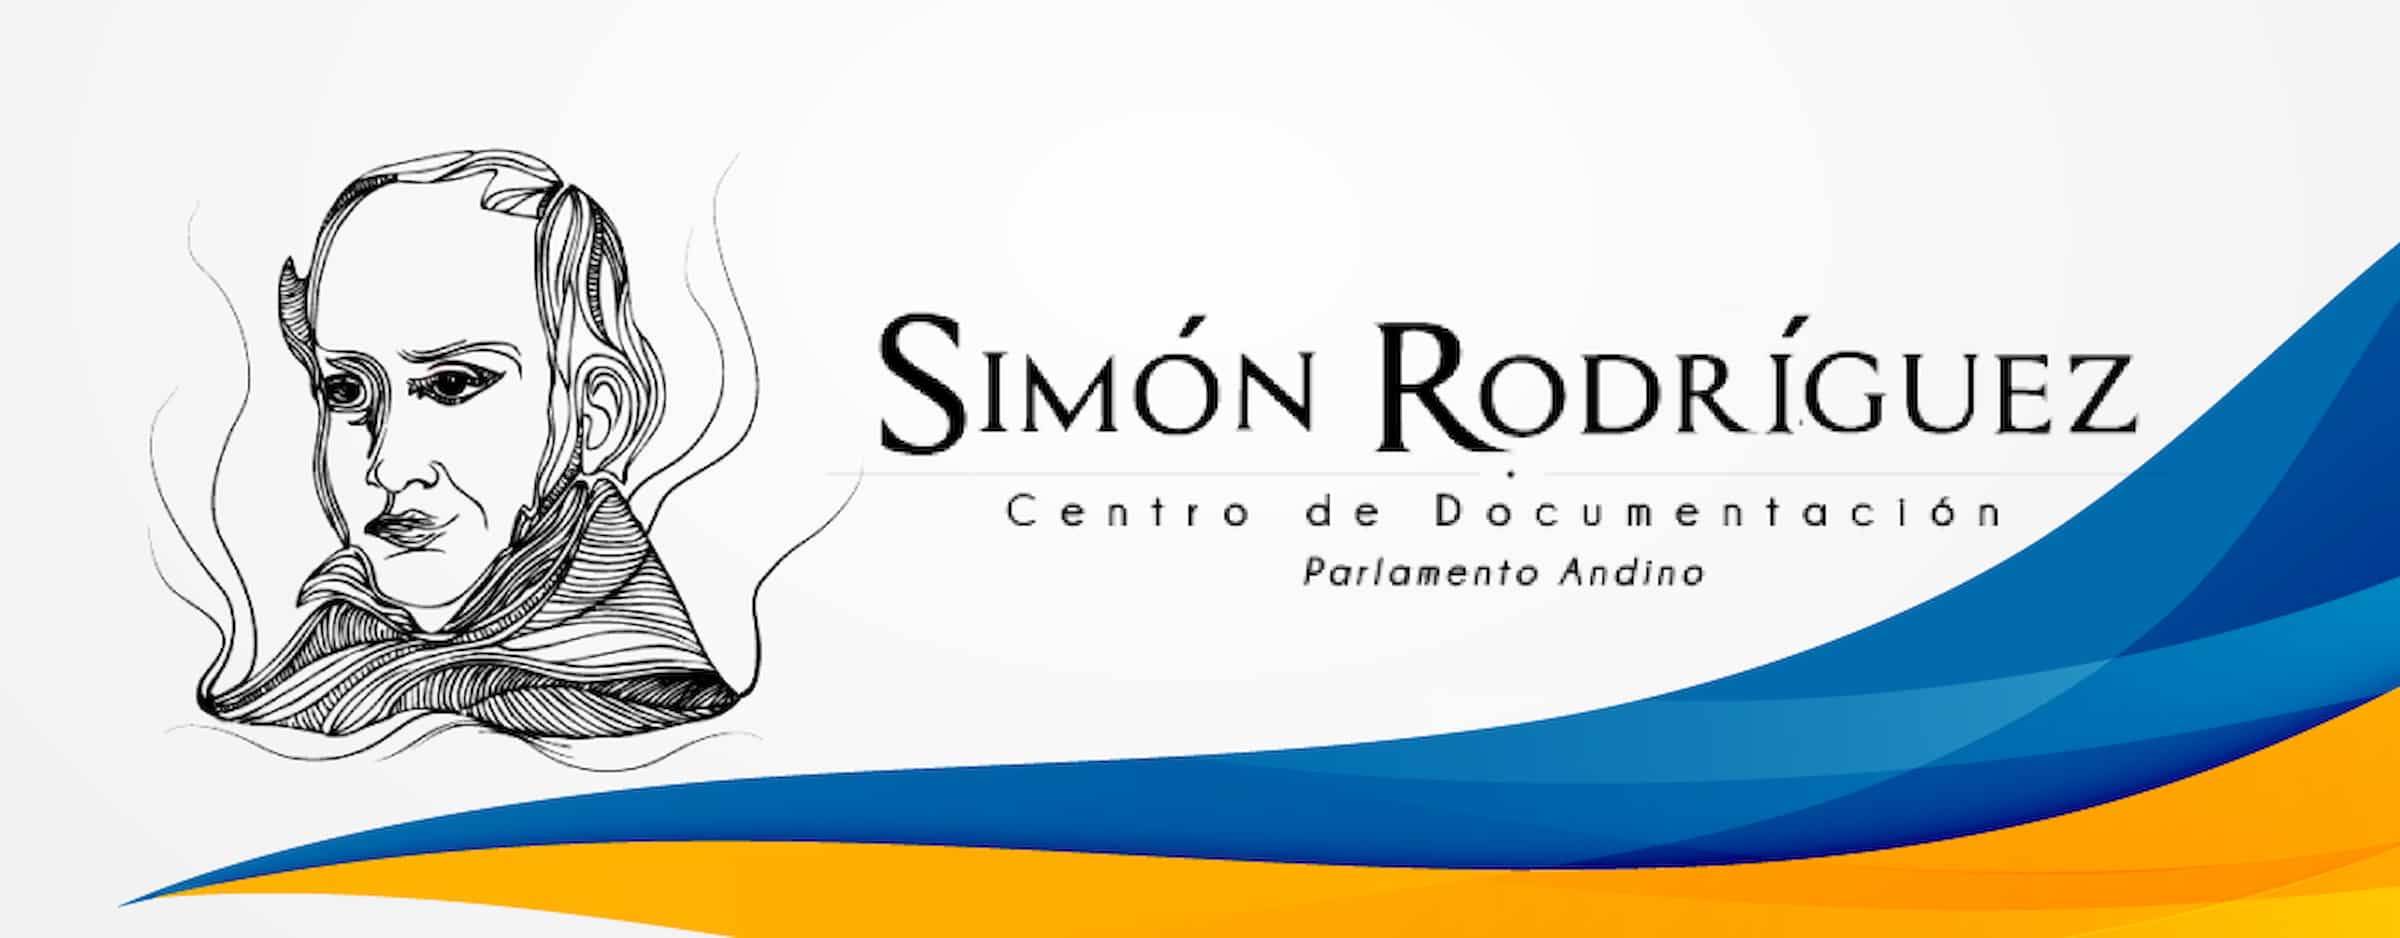 Acerca de Simón Rodríguez